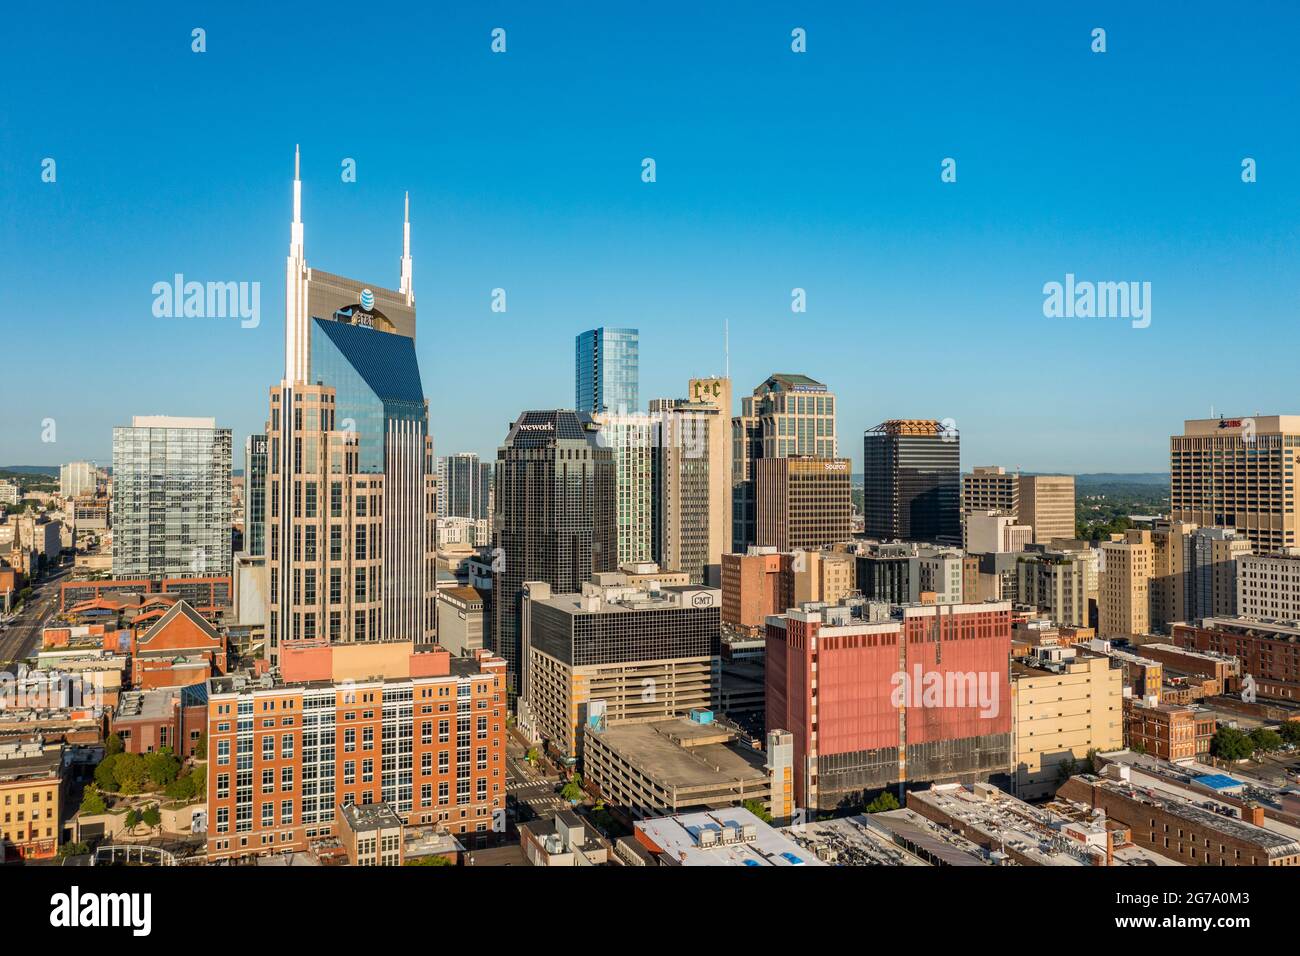 Nashville, Tennessee - 28 juin 2021 : vue aérienne par drone du quartier financier du centre-ville de Nashville Banque D'Images